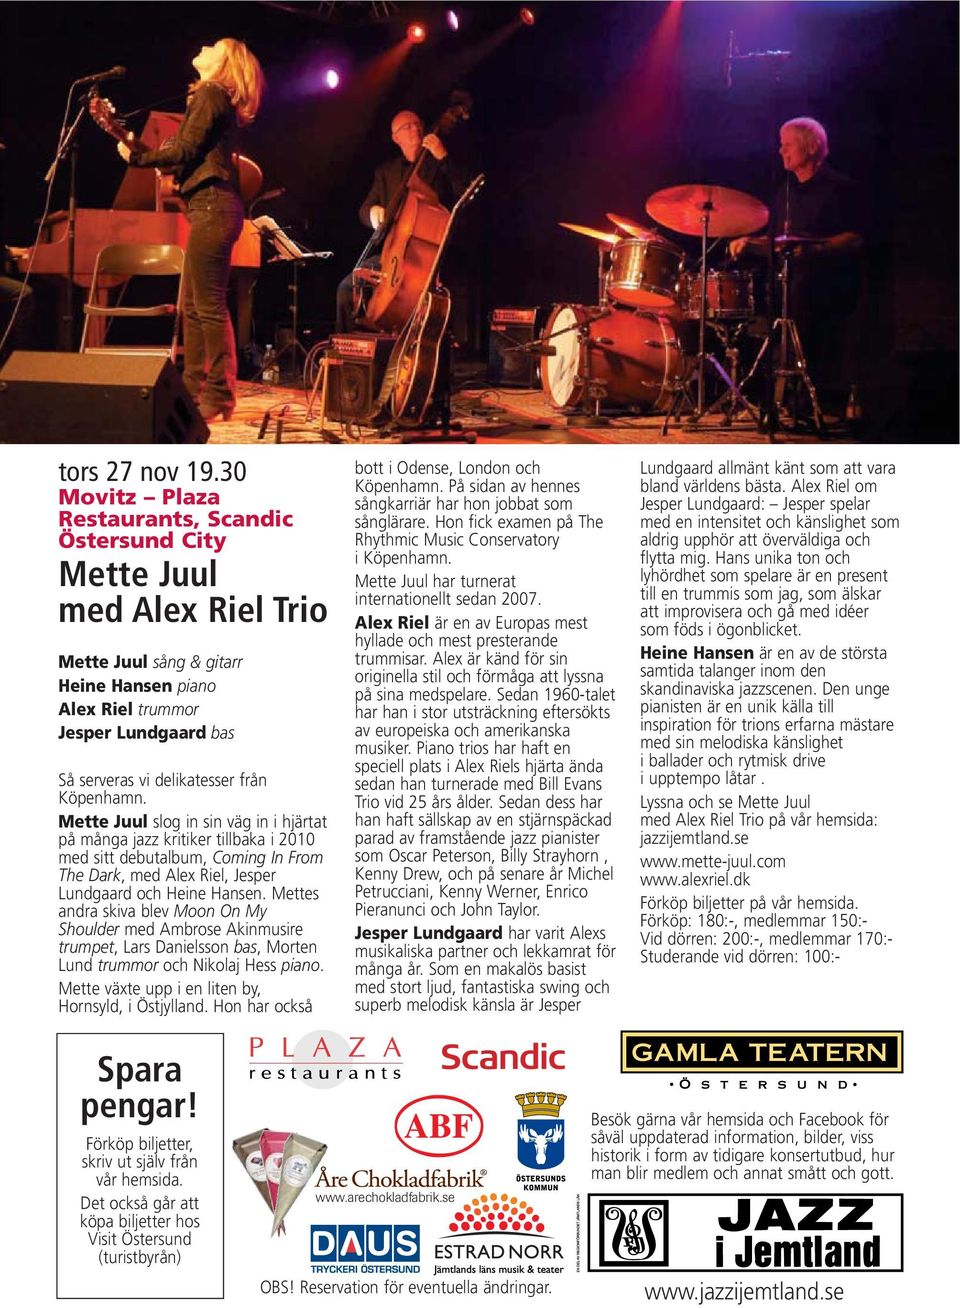 Köpenhamn. Mette Juul slog in sin väg in i hjärtat på många jazz kritiker tillbaka i 2010 med sitt debutalbum, Coming In From The Dark, med Alex Riel, Jesper Lundgaard och Heine Hansen.